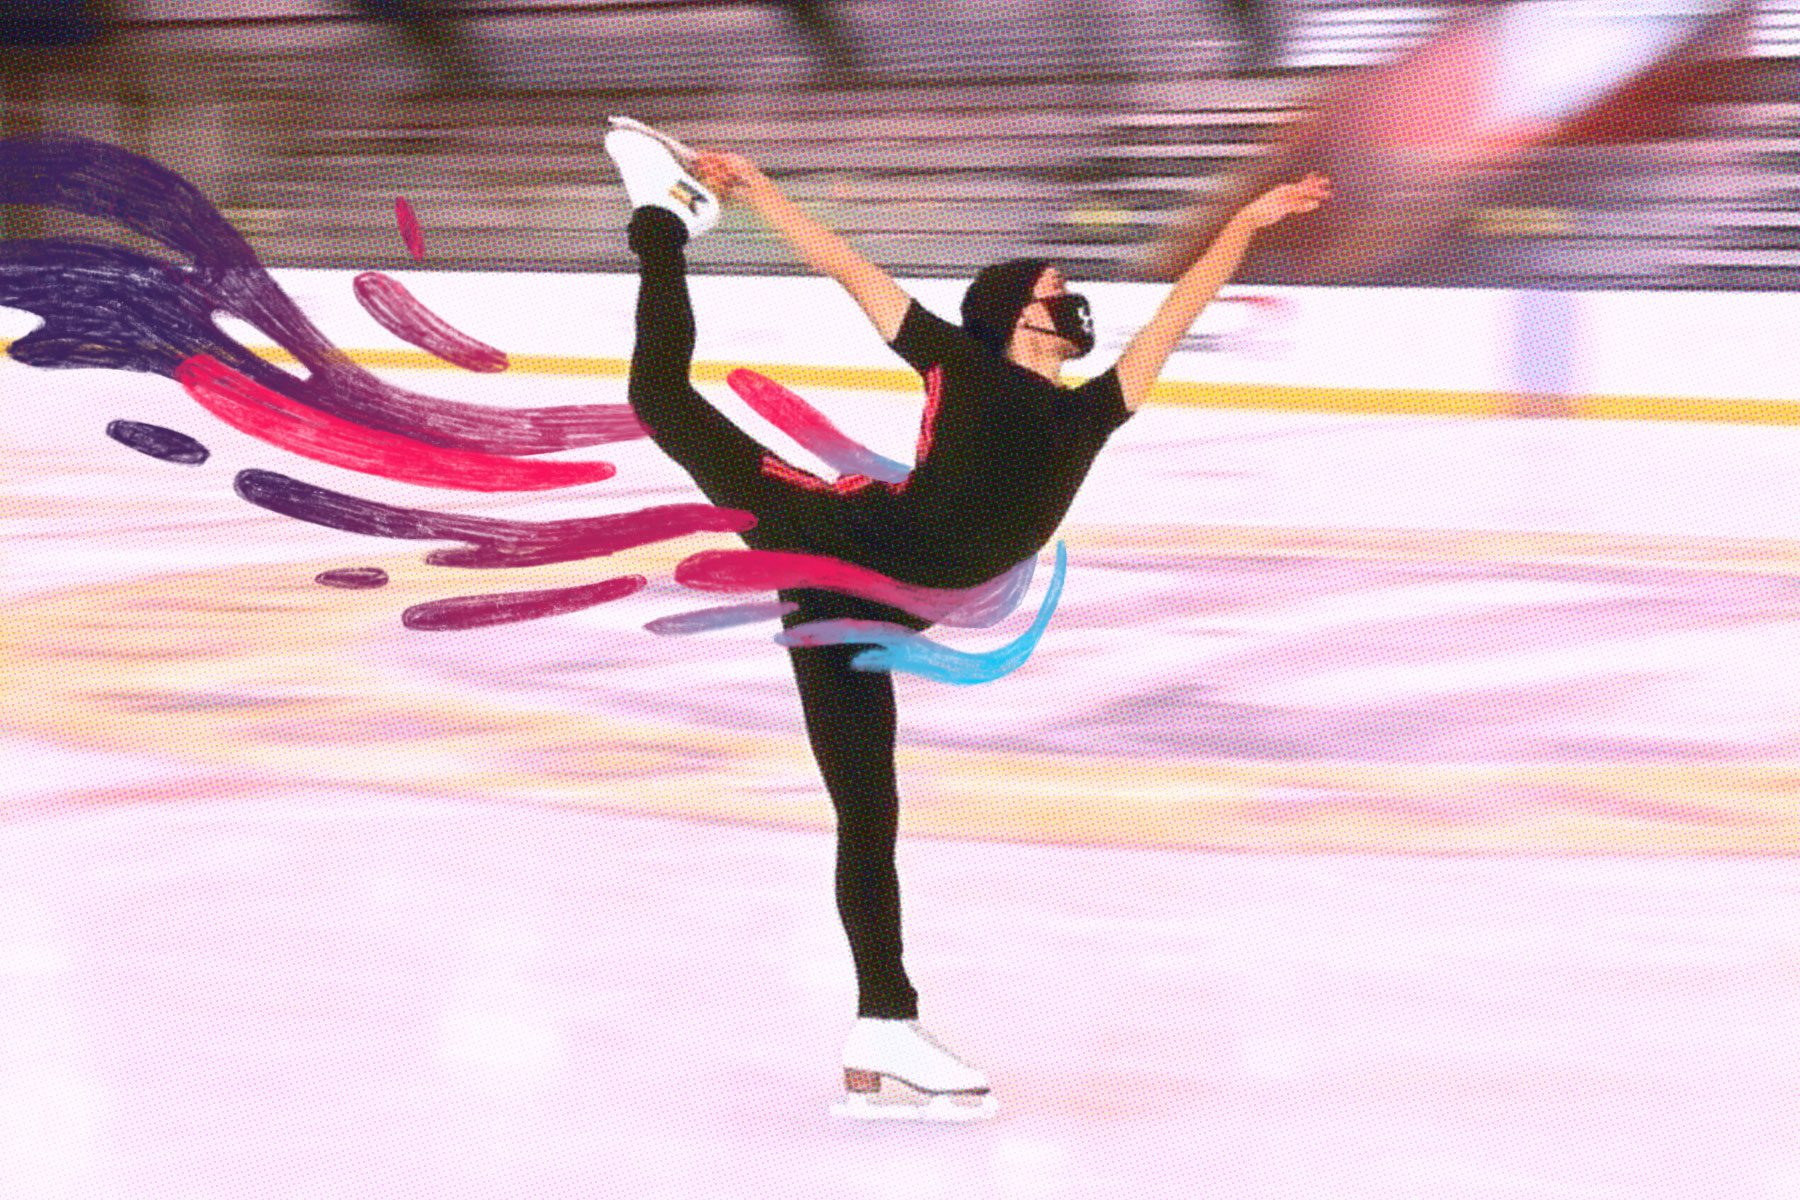 Eliot Halverson skates on ice.